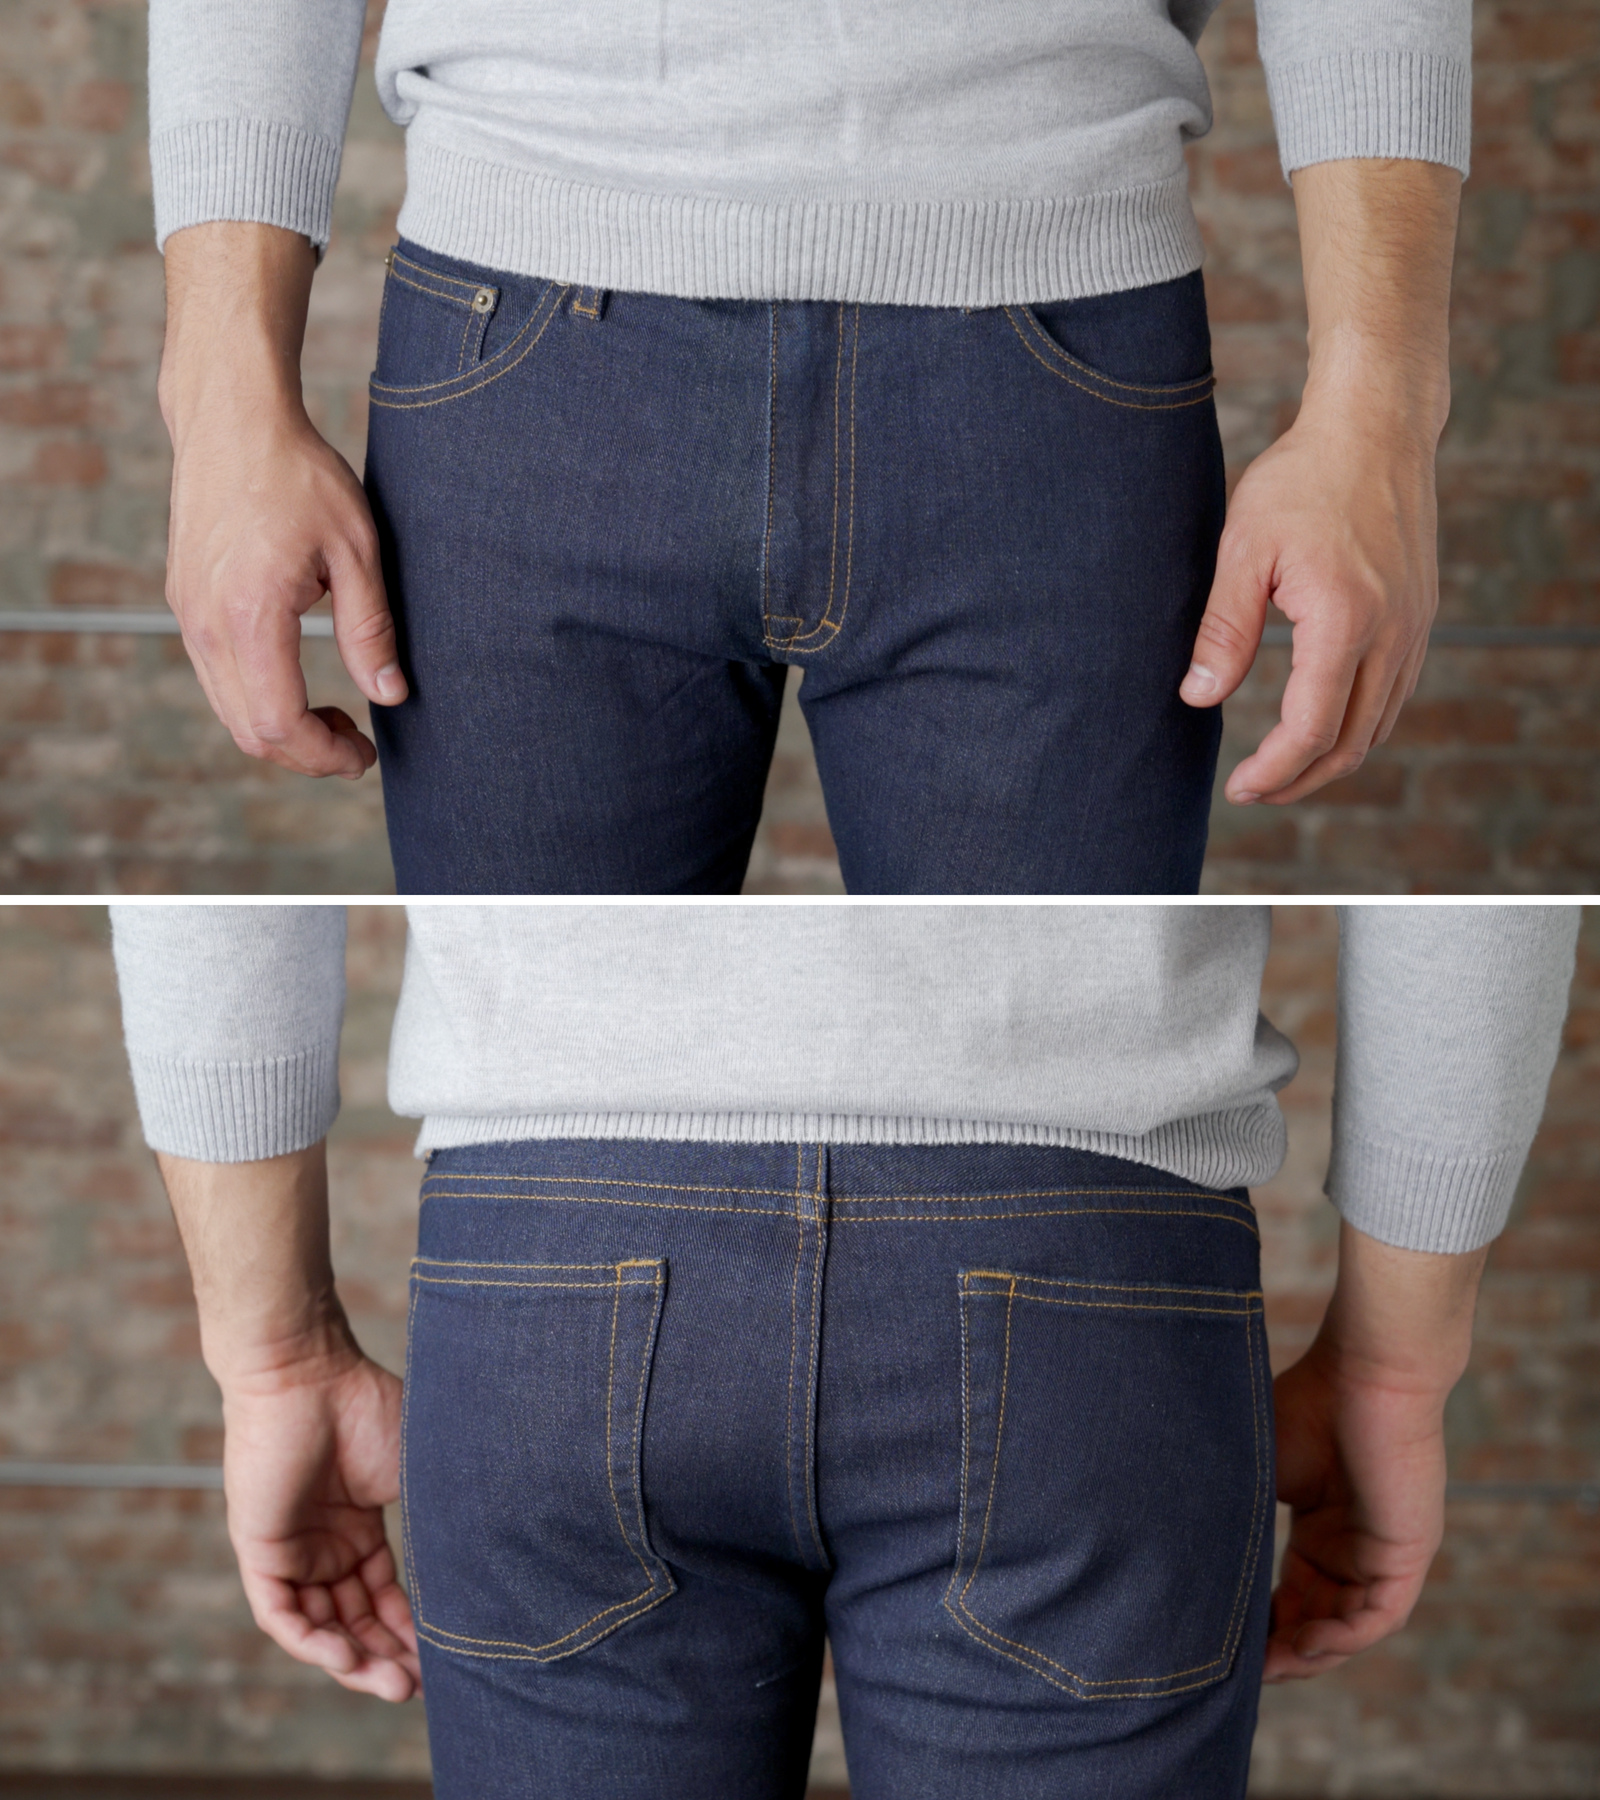 jeans for short legs men's